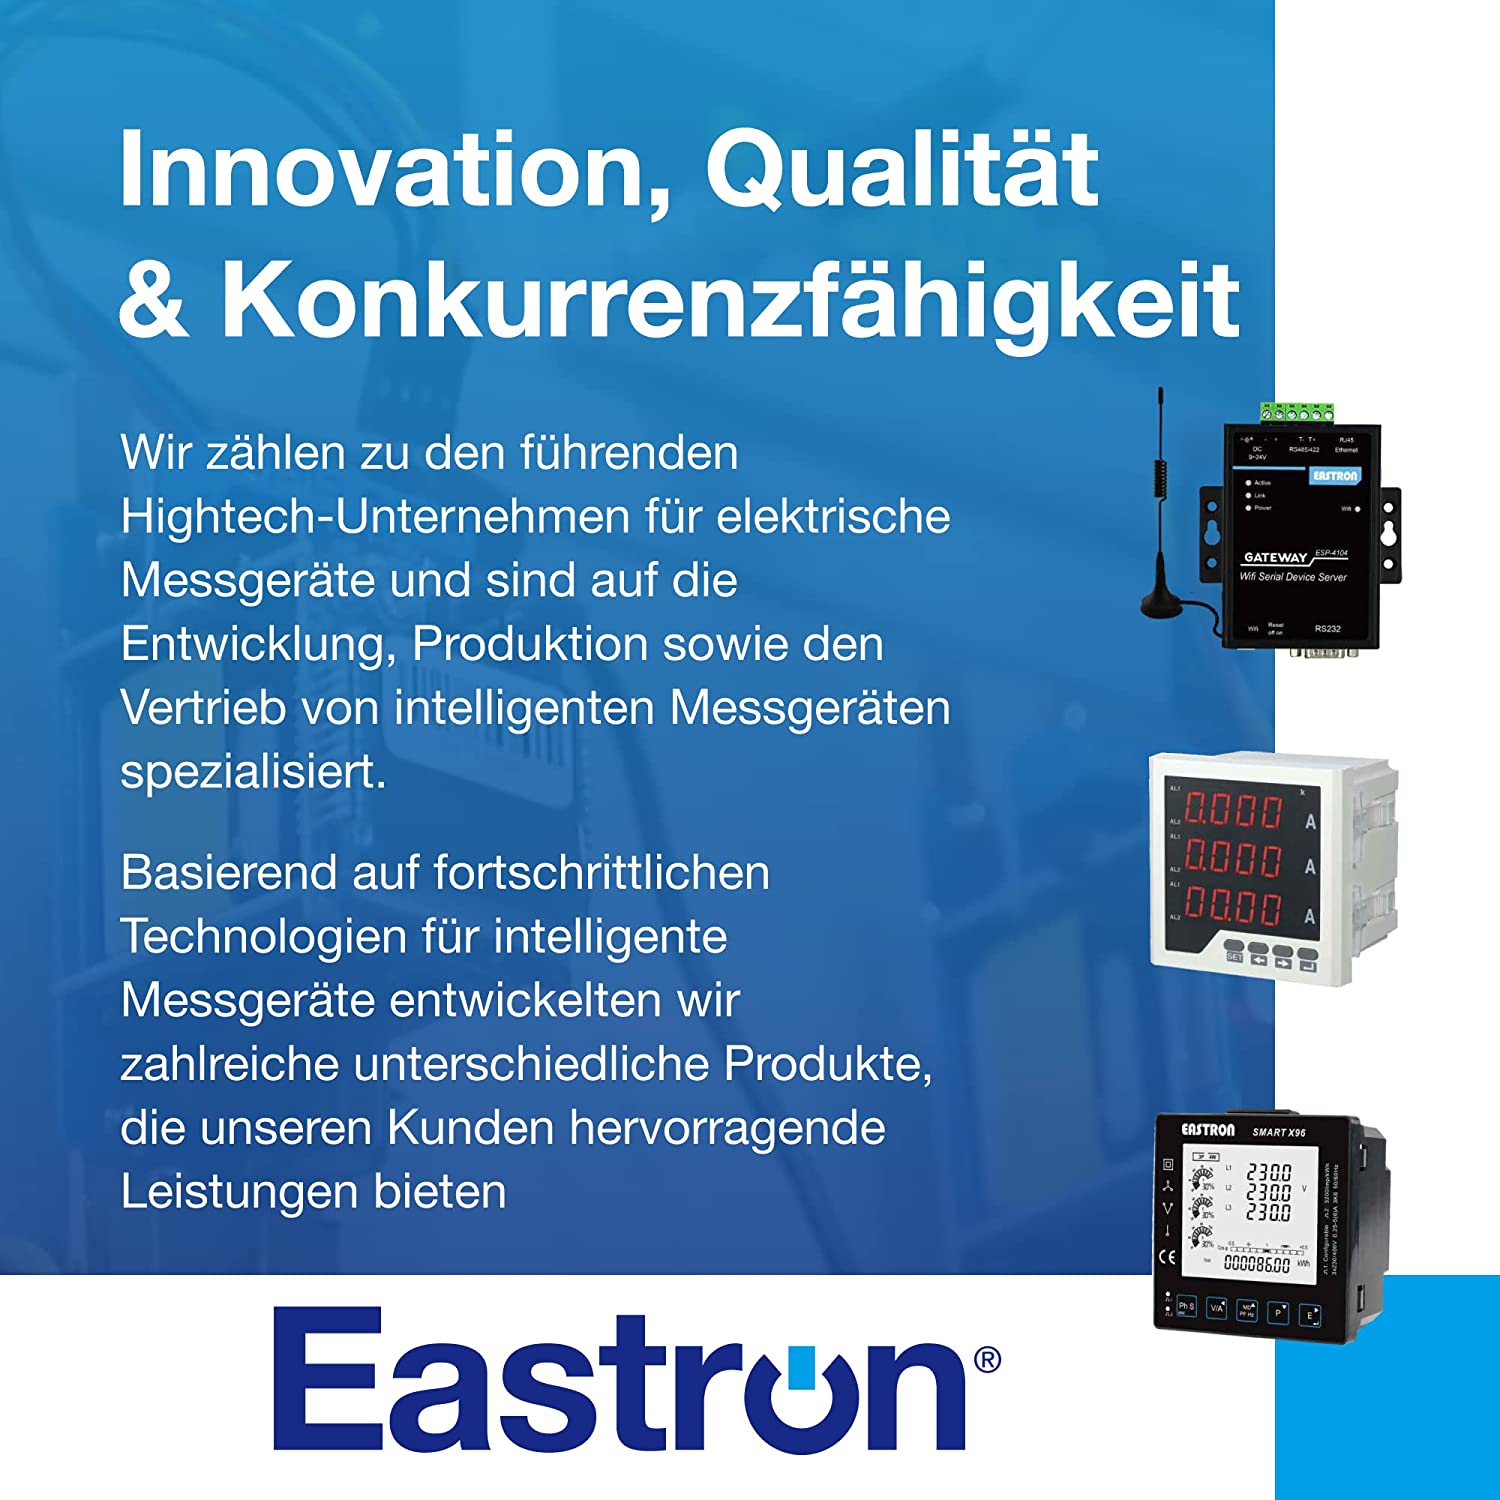 EASTRON SDM630 Stromverbrauchsmesser - 1 oder 3 Phasen Stromzähler, Energiemessgerät, Modbus RS485 RTU